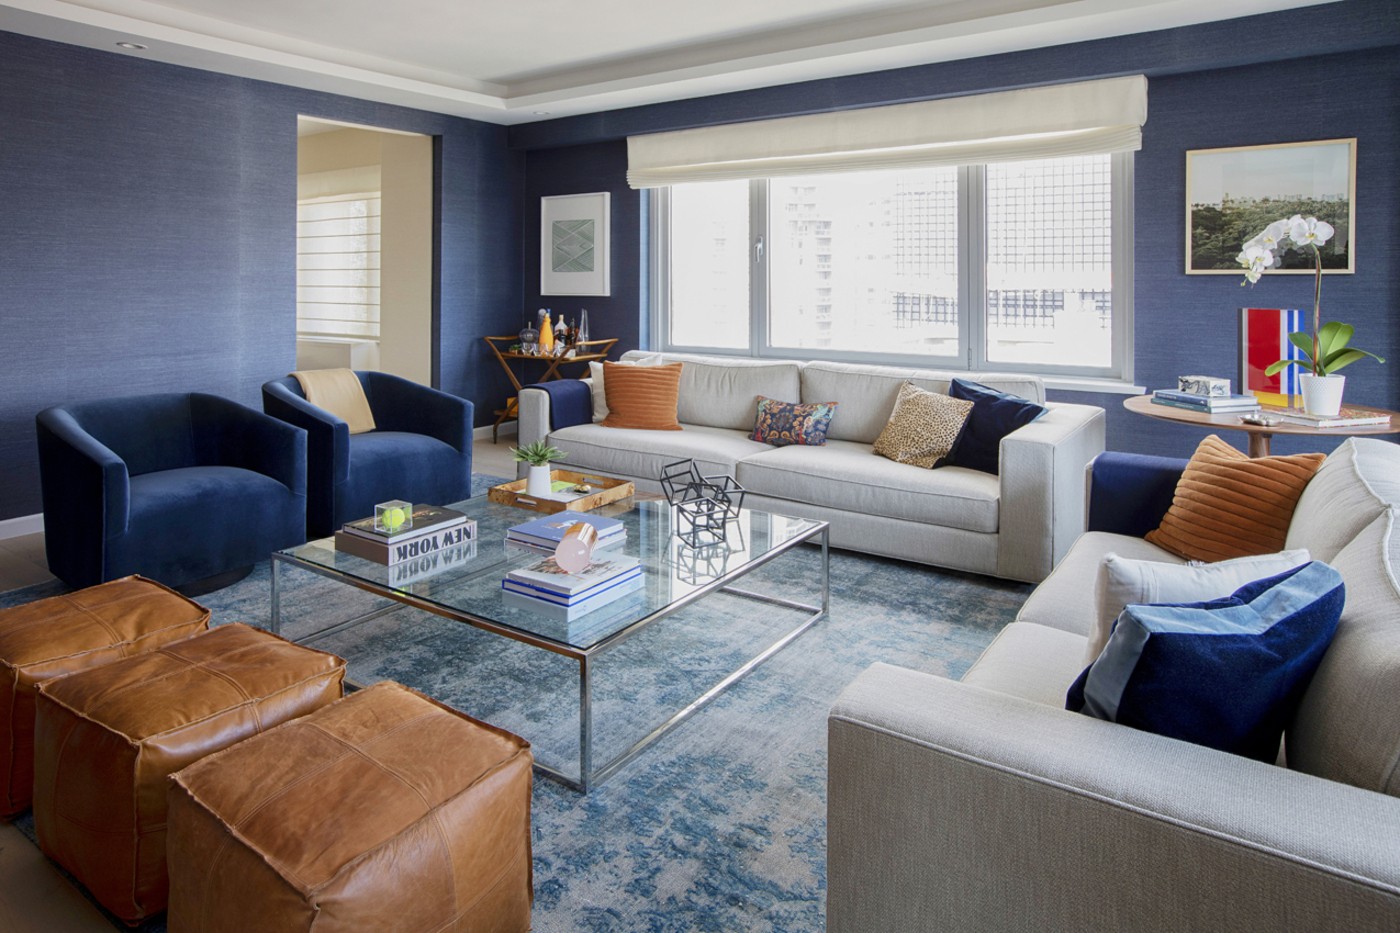 Décor do dia: sala de estar com azul em destaque (Foto: Divulgação)